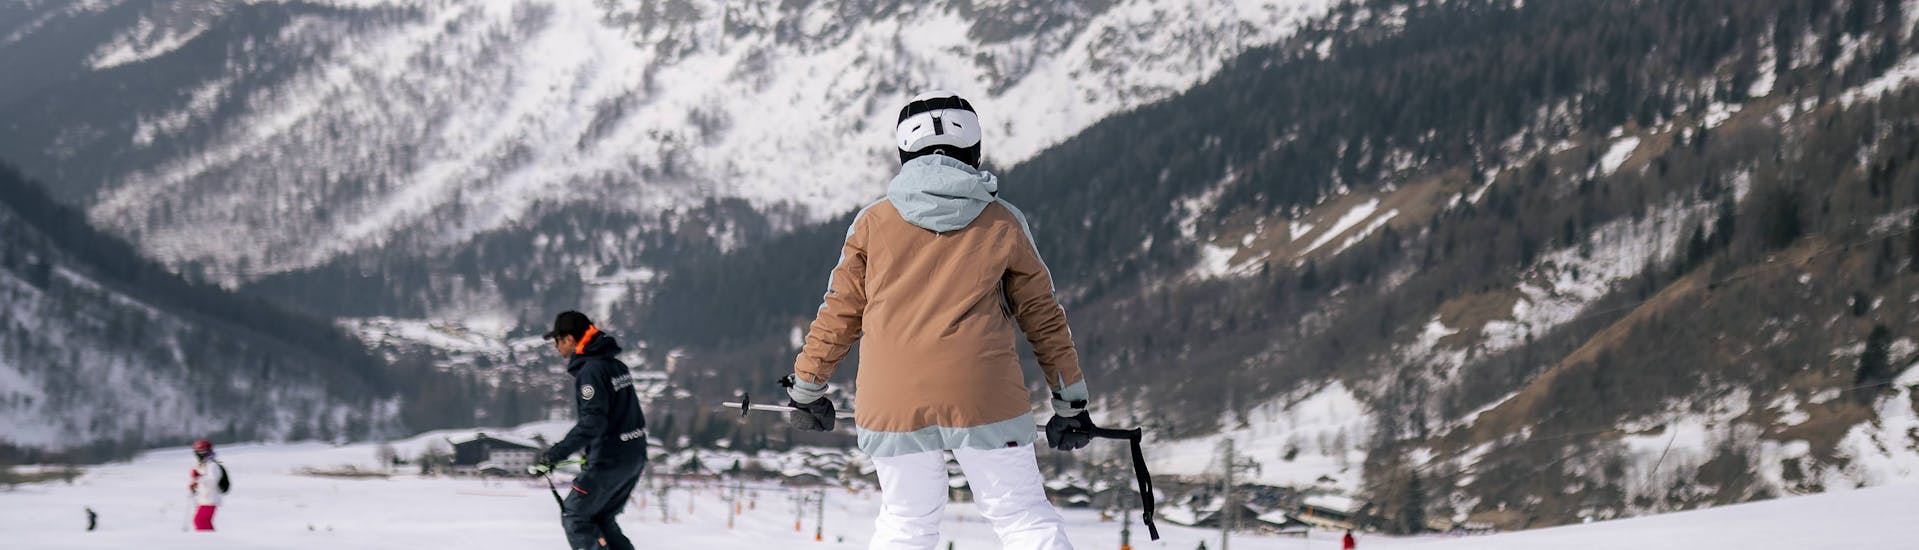 Clases de esquí para adultos en Le Tour - 3 días (lunes a miércoles).